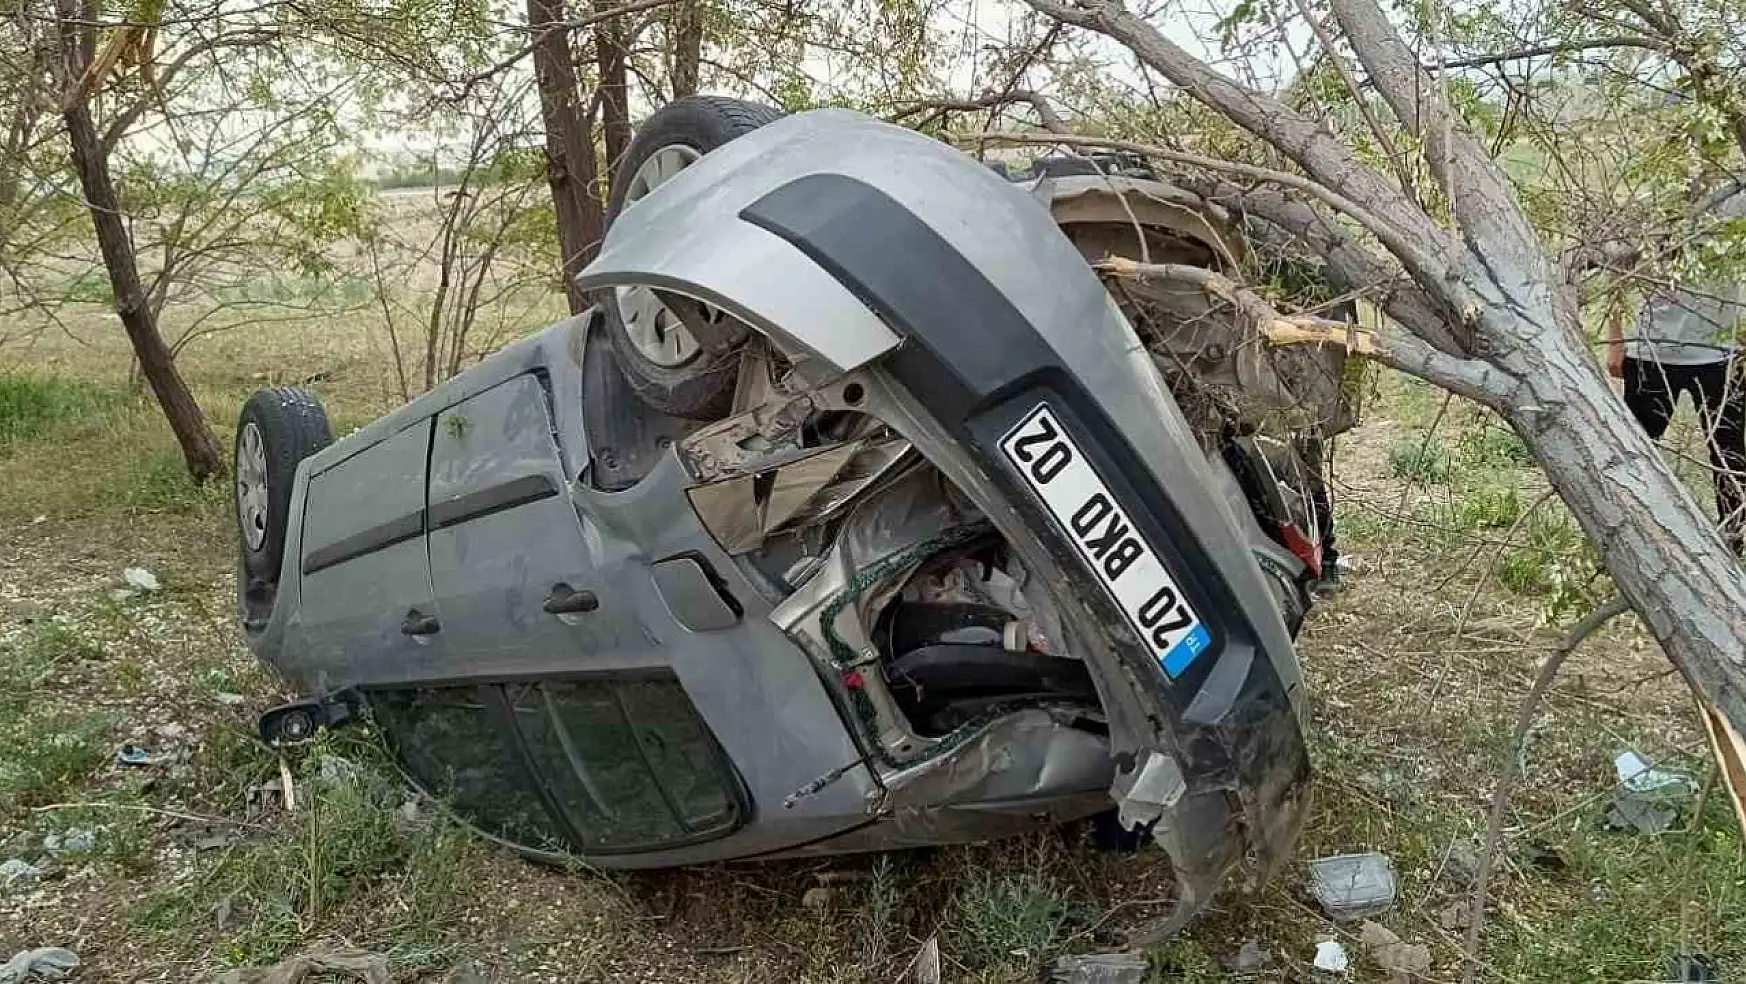 Lastik patlamasıyla sonuçlanan kaza: Ereğli'de 4 yaralı